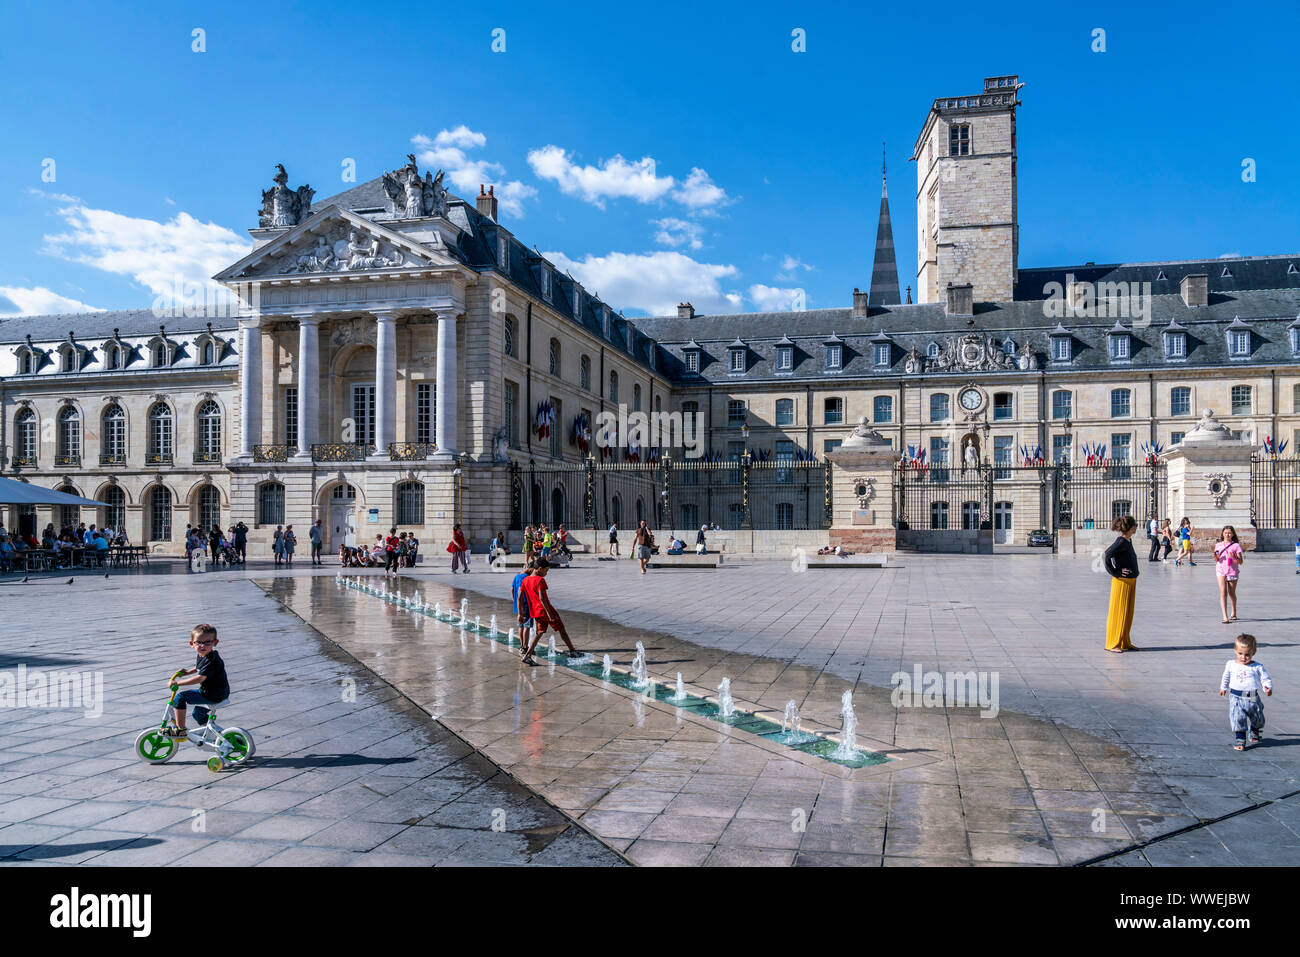 kids playing in the fountains on Place de la Liberation, Le palais des ducs de Bourgogne, ducs palace, Dijon, Burgundy, France, Stock Photo